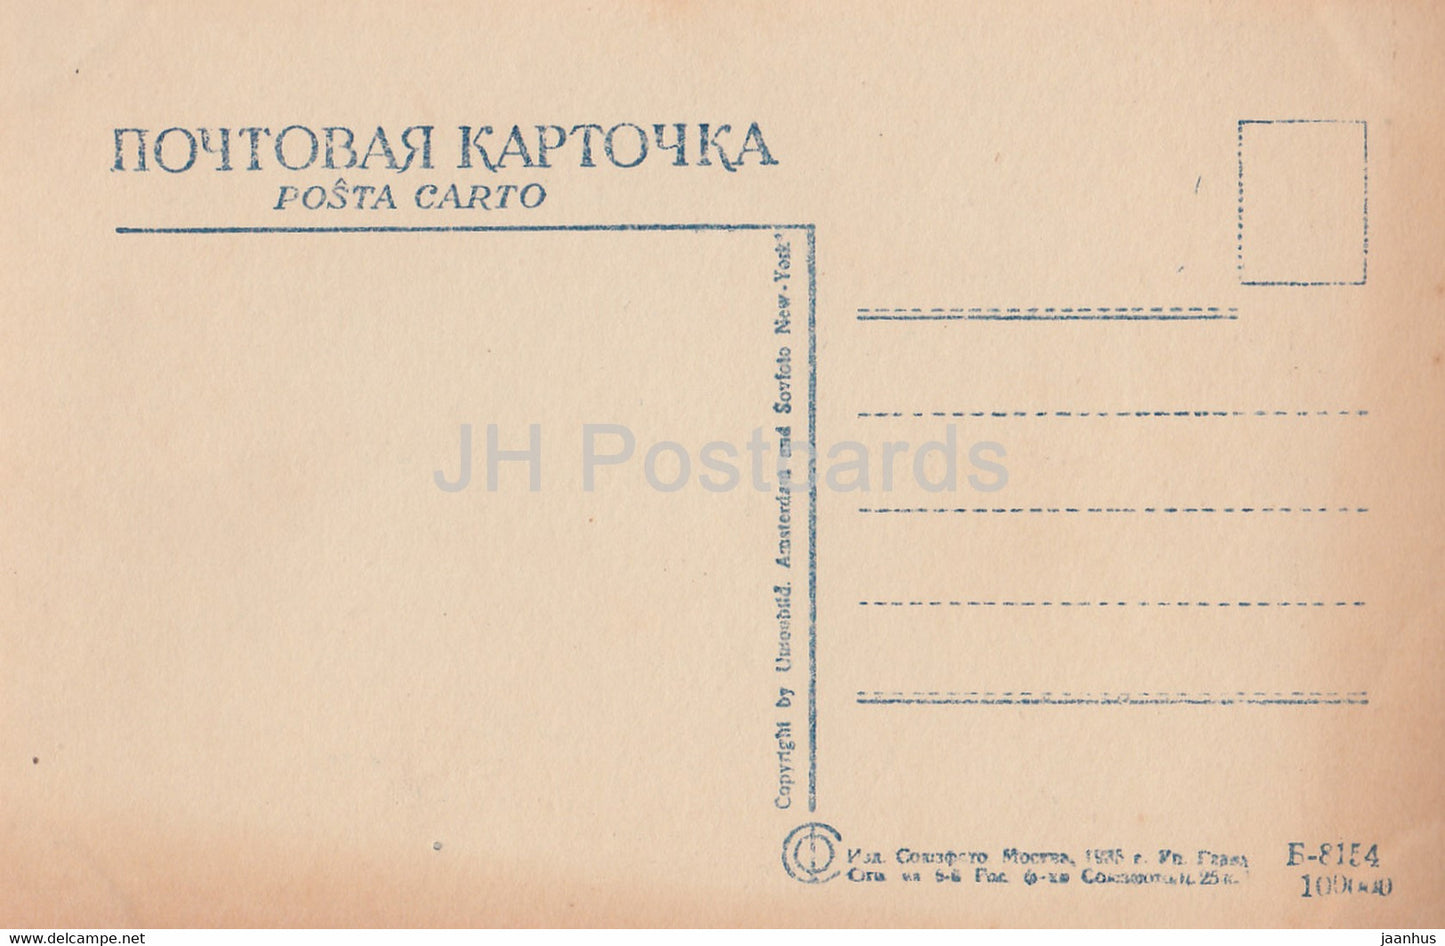 Écrivain russe Fiodor Dostoïevski - carte postale ancienne - 1935 - Russie URSS - inutilisé